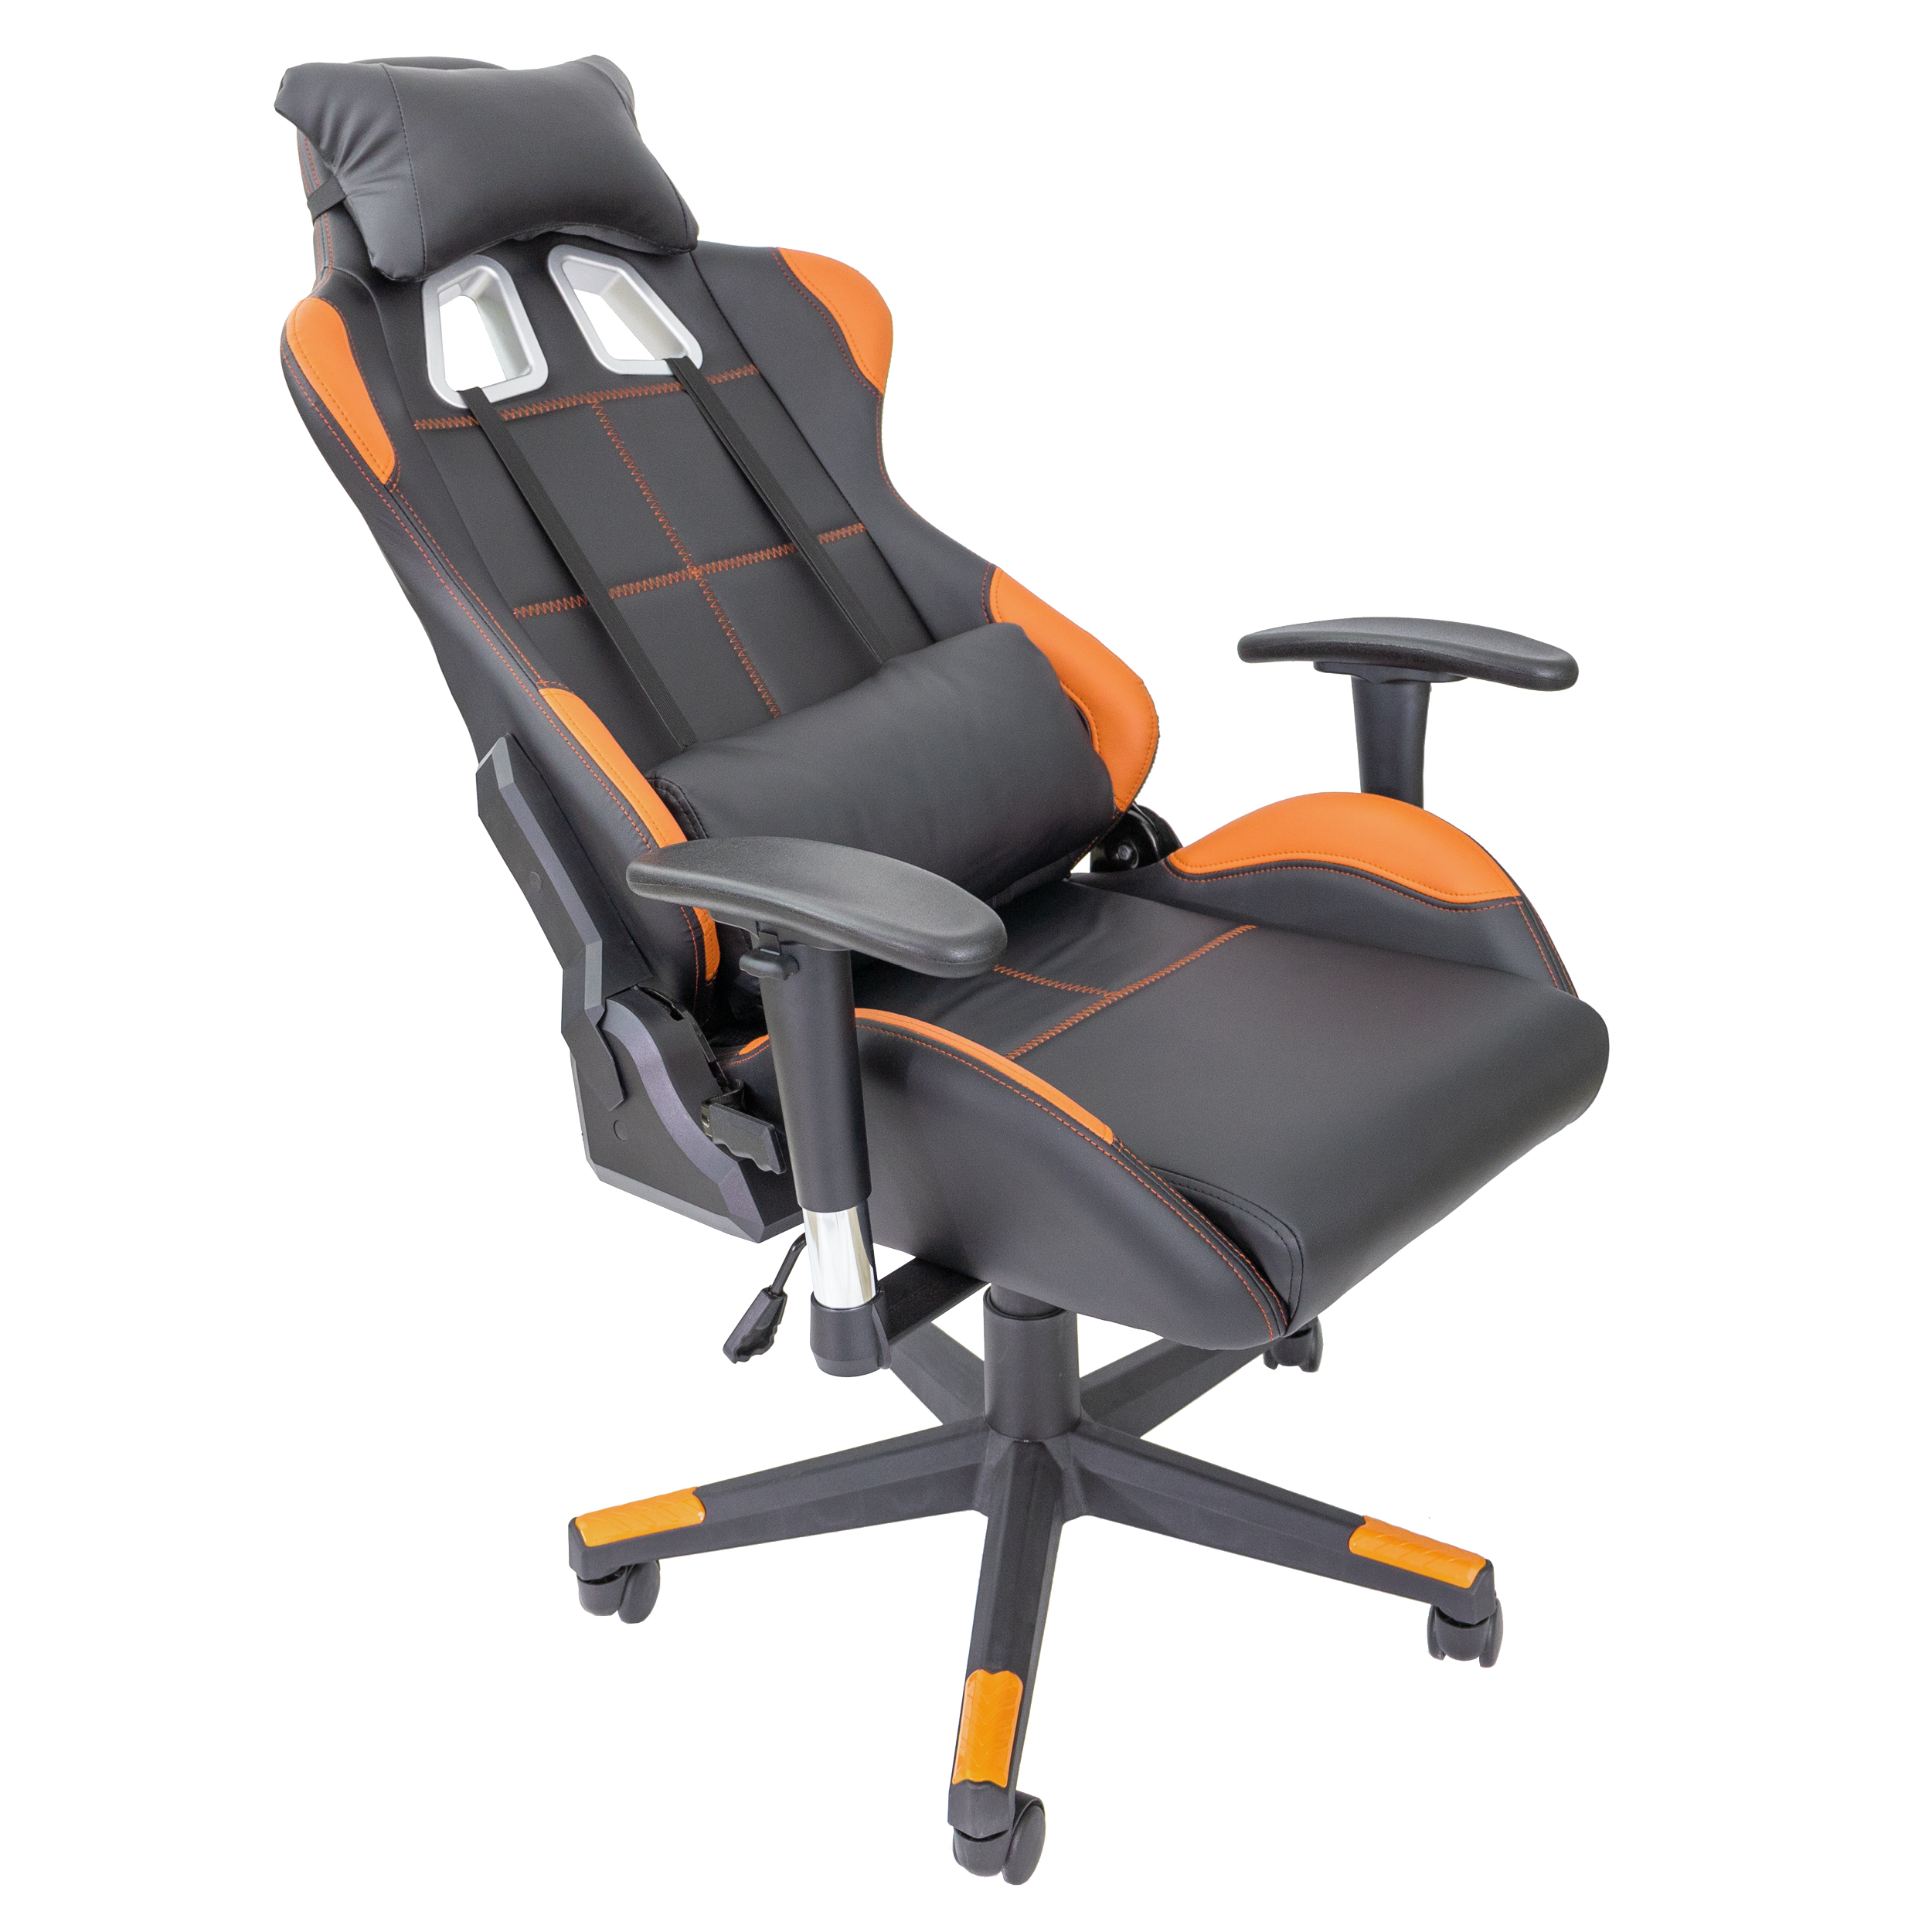 TPFLIVING schwarz/orange Chair, Stuhl Gaming Gaming Fire